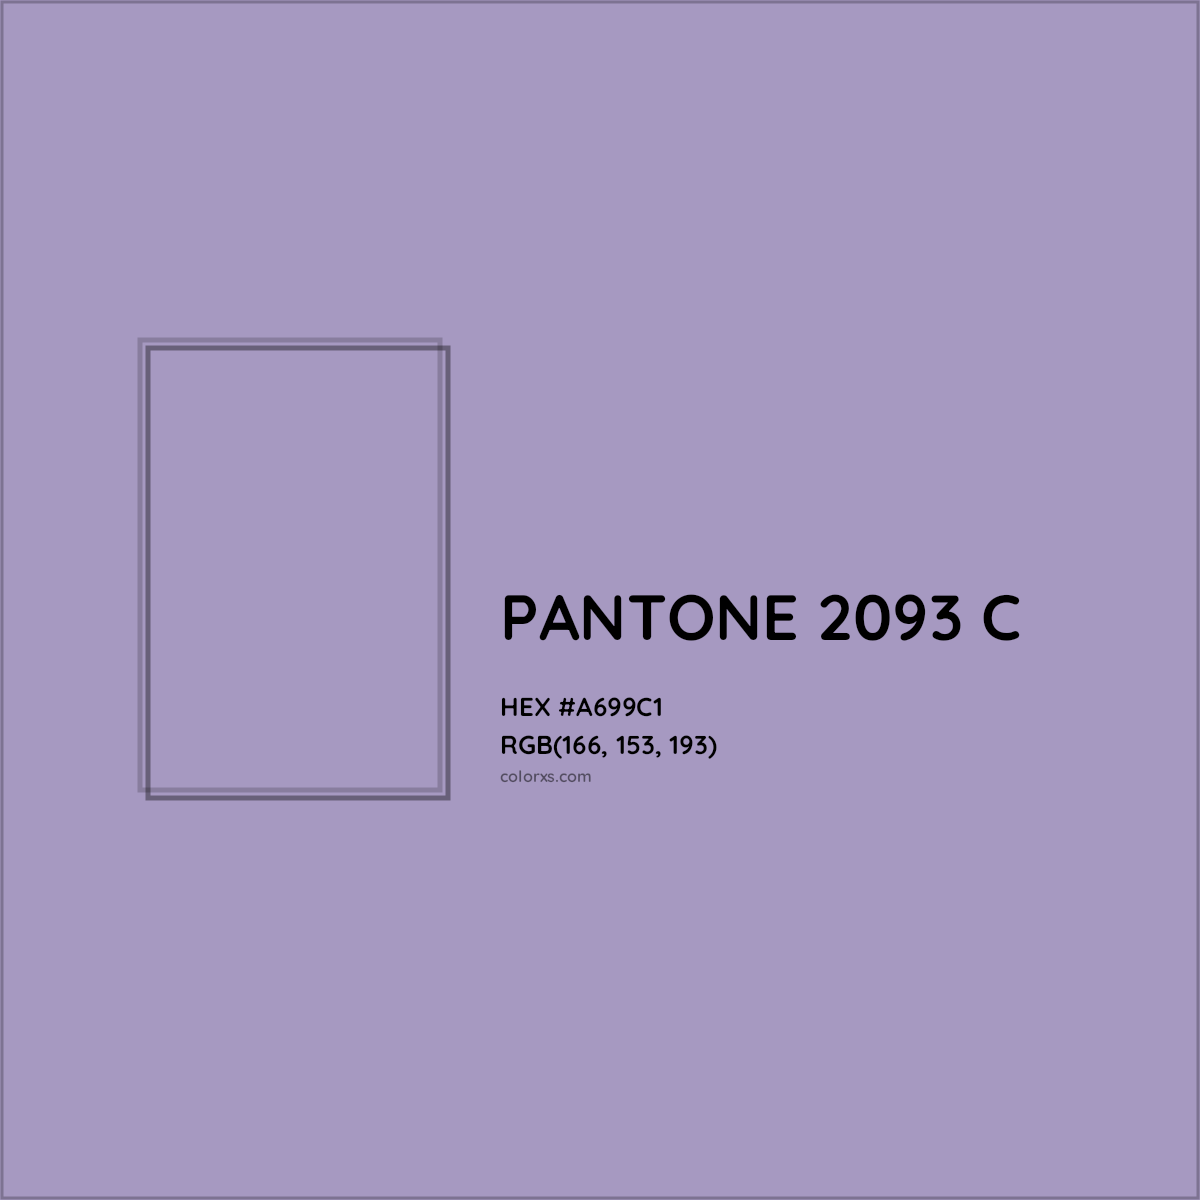 HEX #A699C1 PANTONE 2093 C CMS Pantone PMS - Color Code